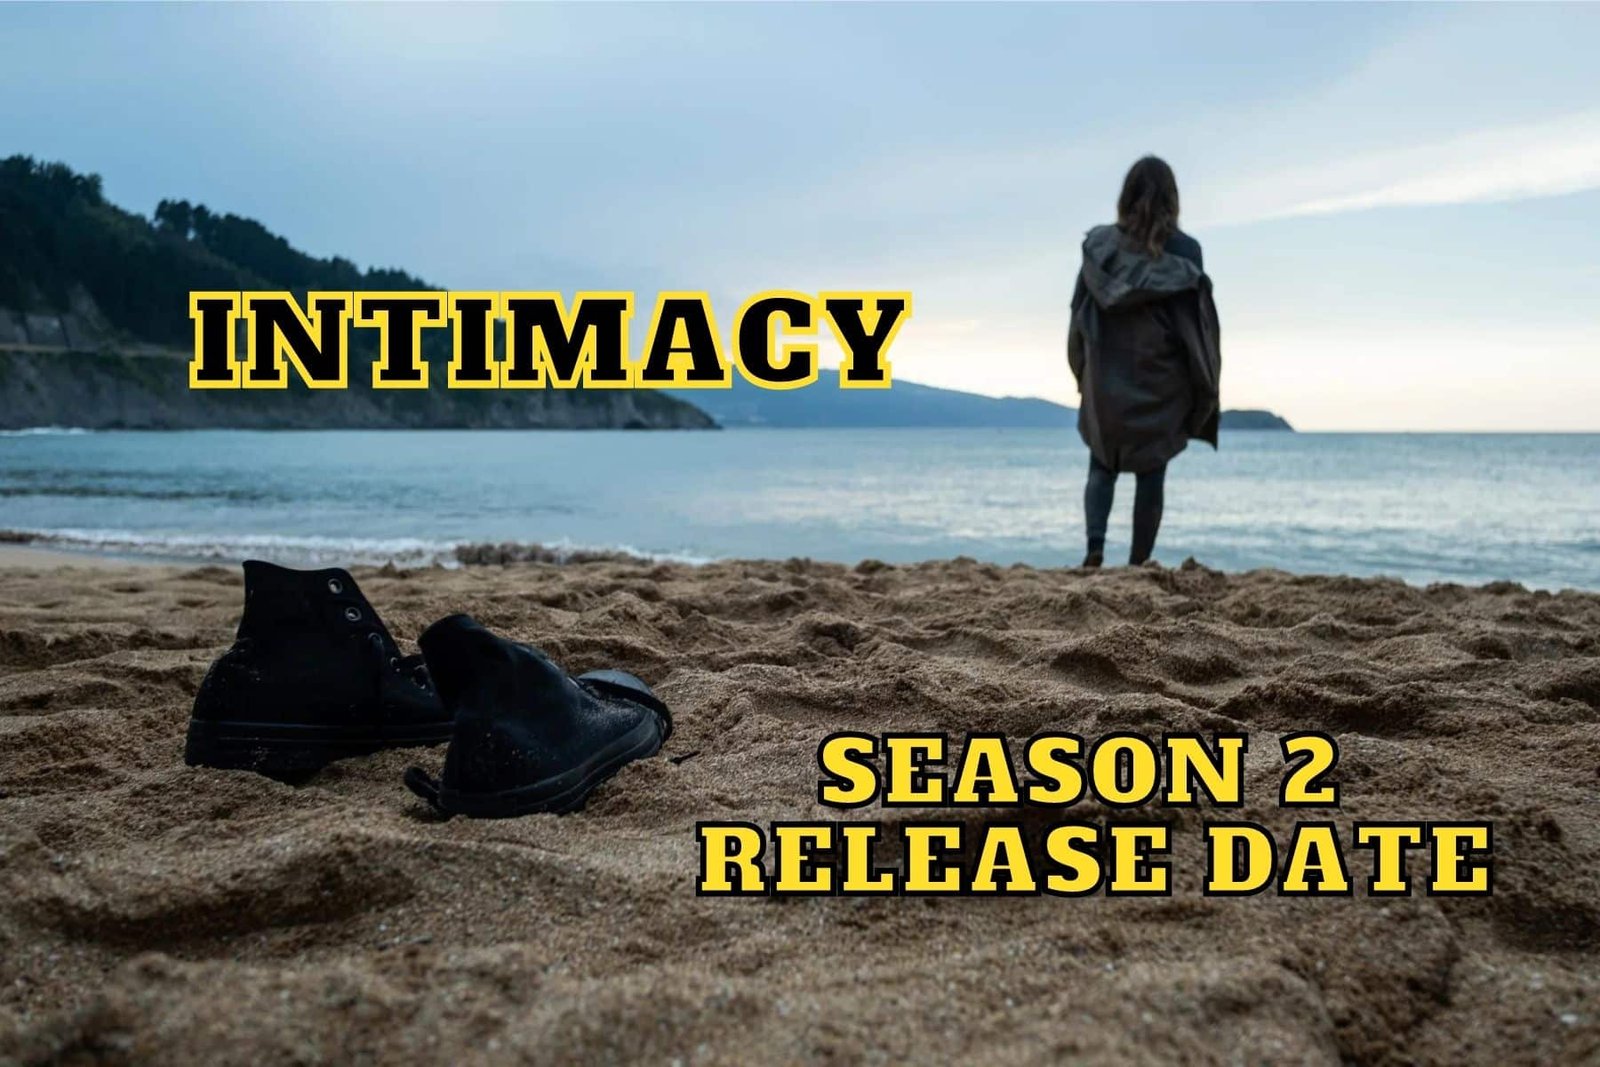 Intimacy Season 2 Release Date, Trailer - Is it Canceled?